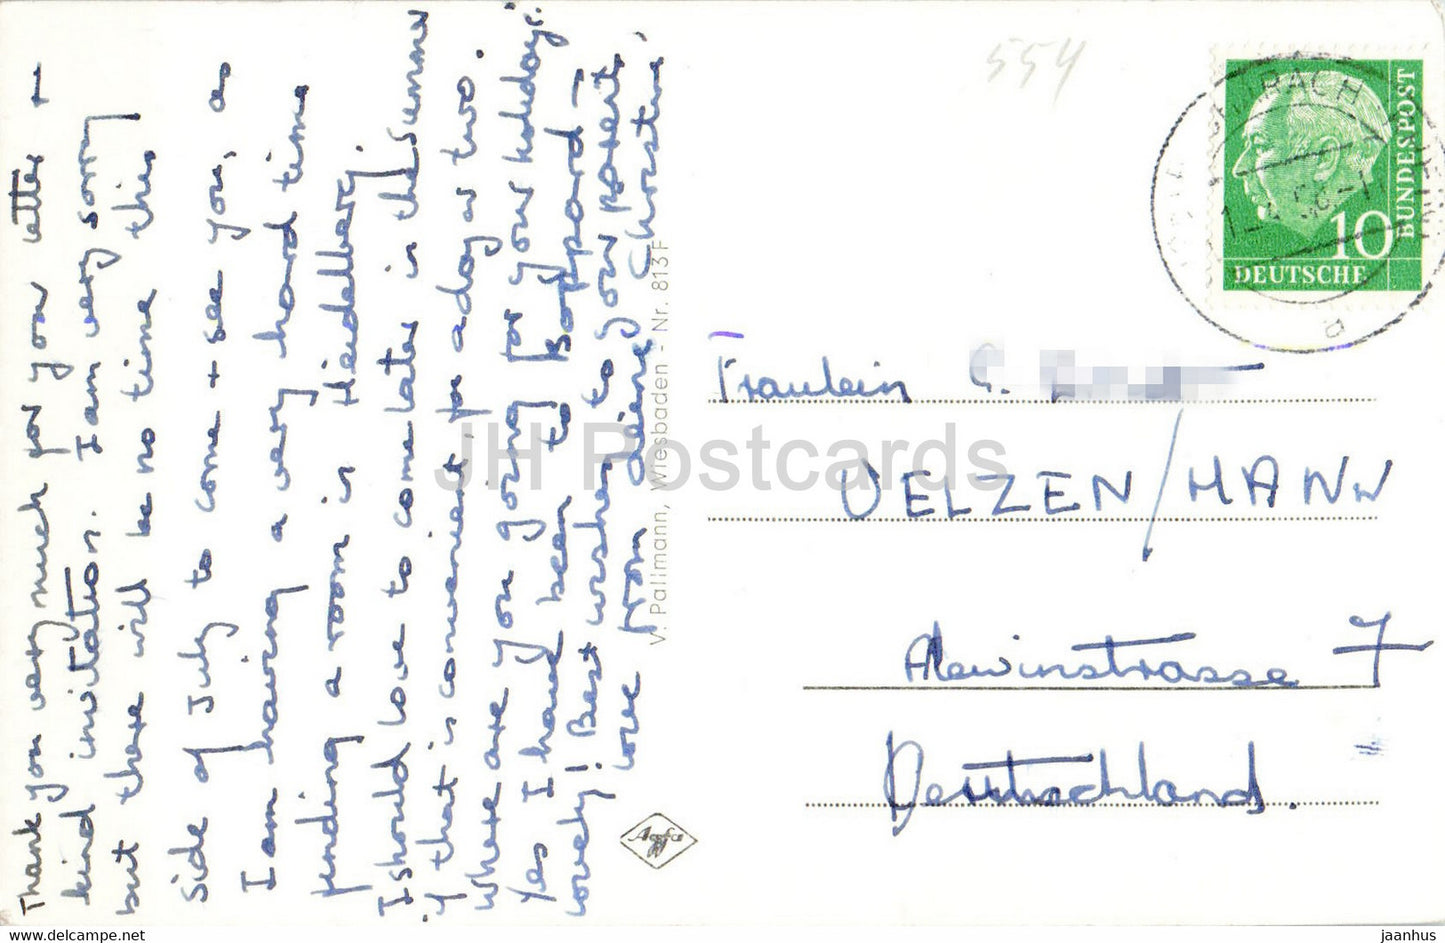 Bacharach a Rh - Jugendburg Stahleck mit Blick auf den Rhein - carte postale ancienne - 1958 - Allemagne - utilisé